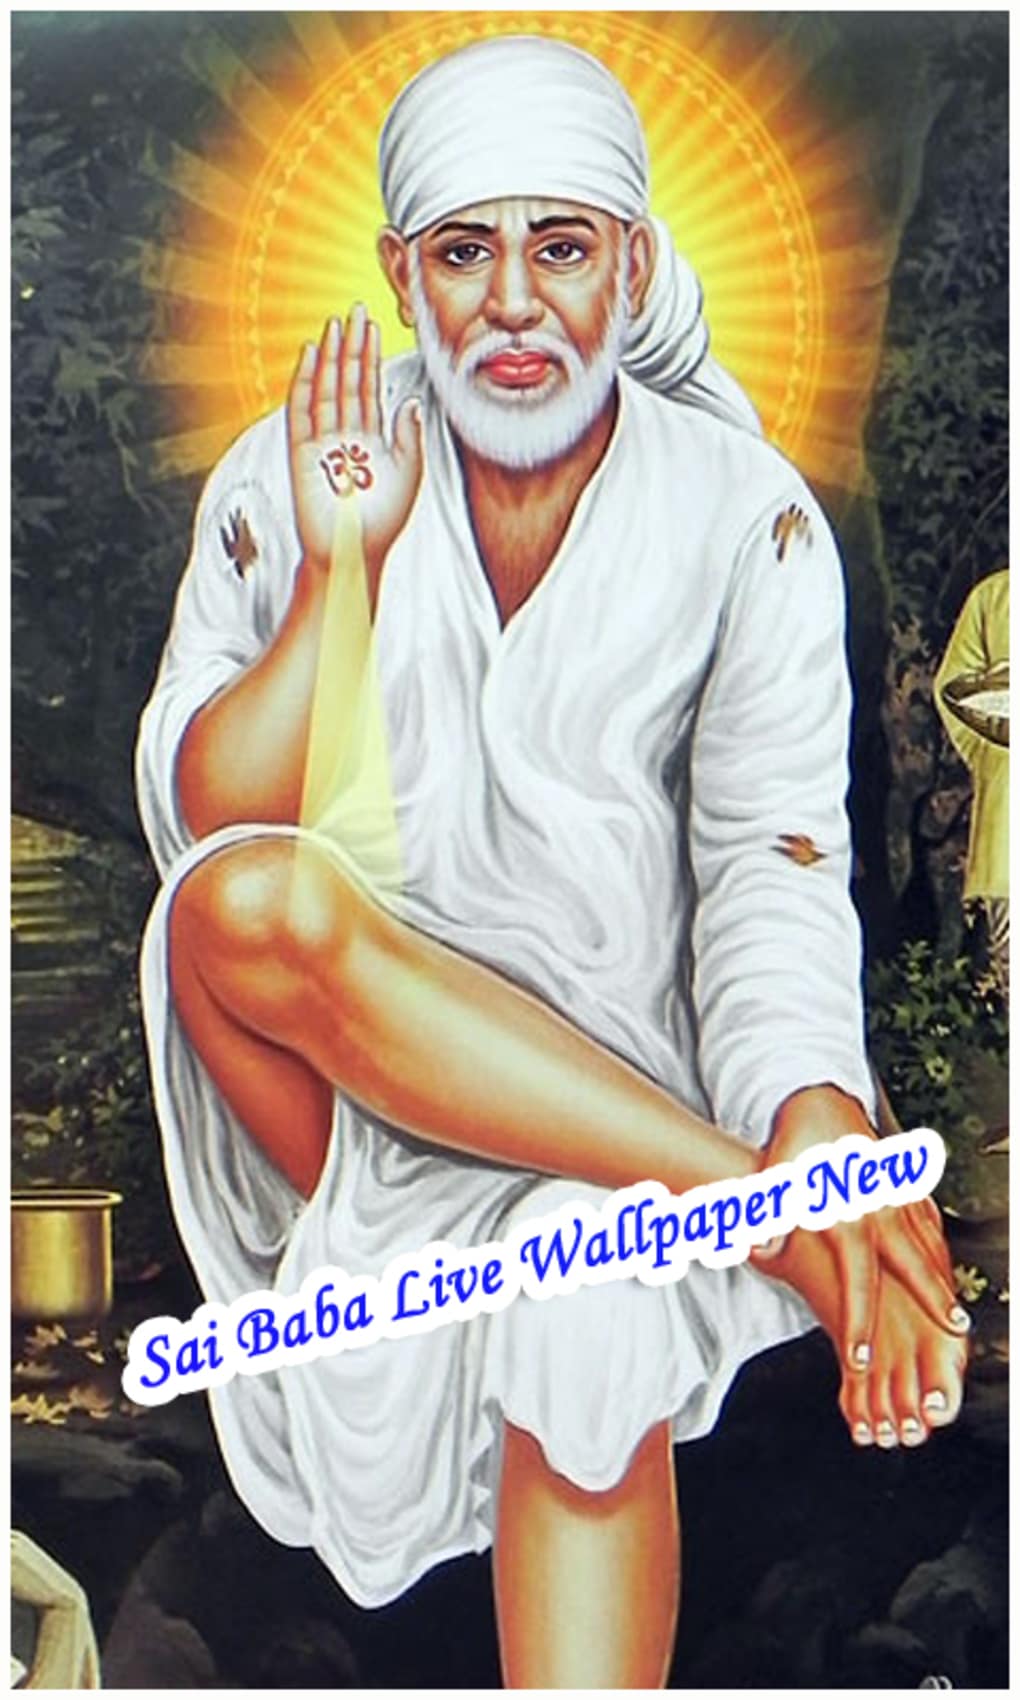 Sai Baba Live Wallpaper New - 1020x1700 Wallpaper 